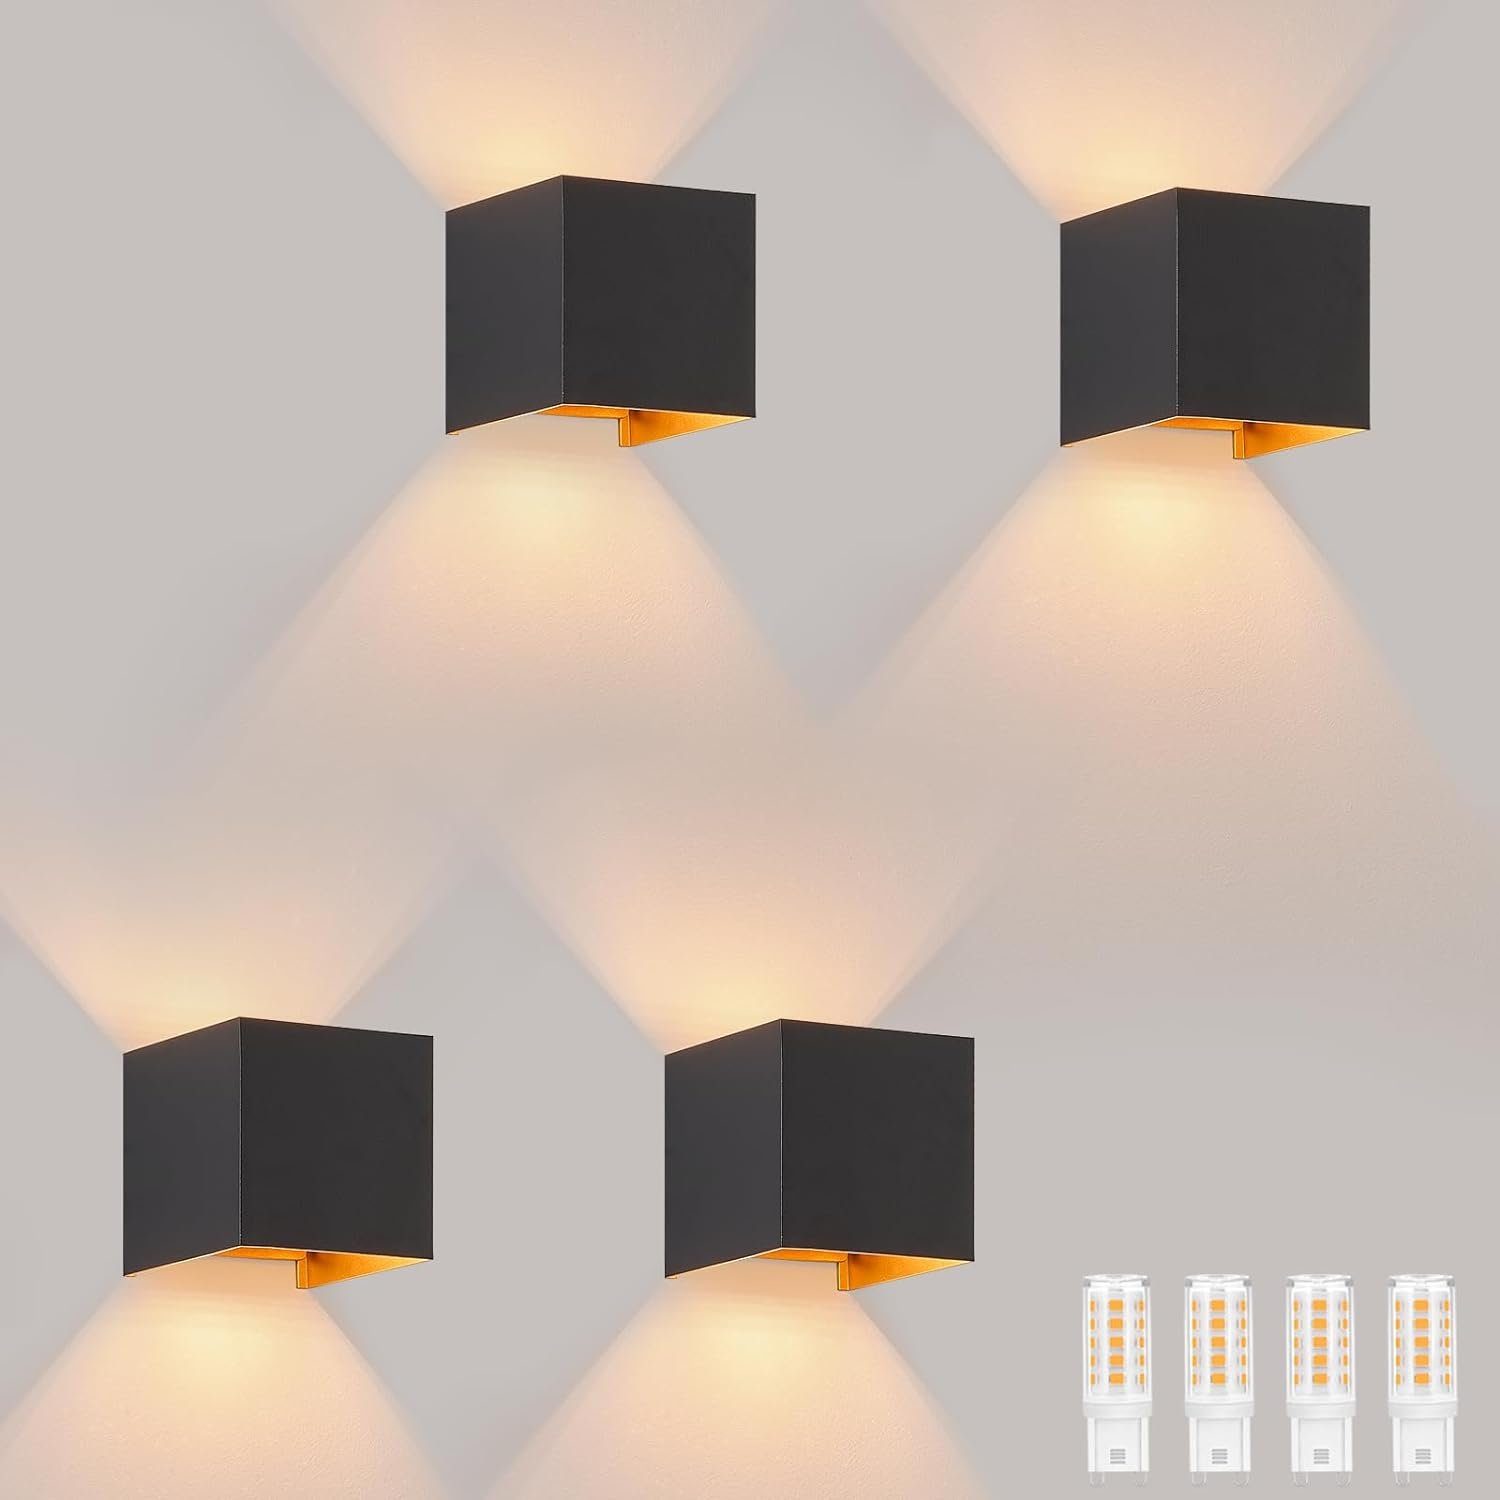 ZMH Wandleuchte 4ER LED Wandlampe - Aussenlampe Innen Außenleuchte Wand G9, LED fest integriert, 3000k, 3W Warmweiß G9 Einstellbar Strahl für Terrasse, Schwarz-Gold